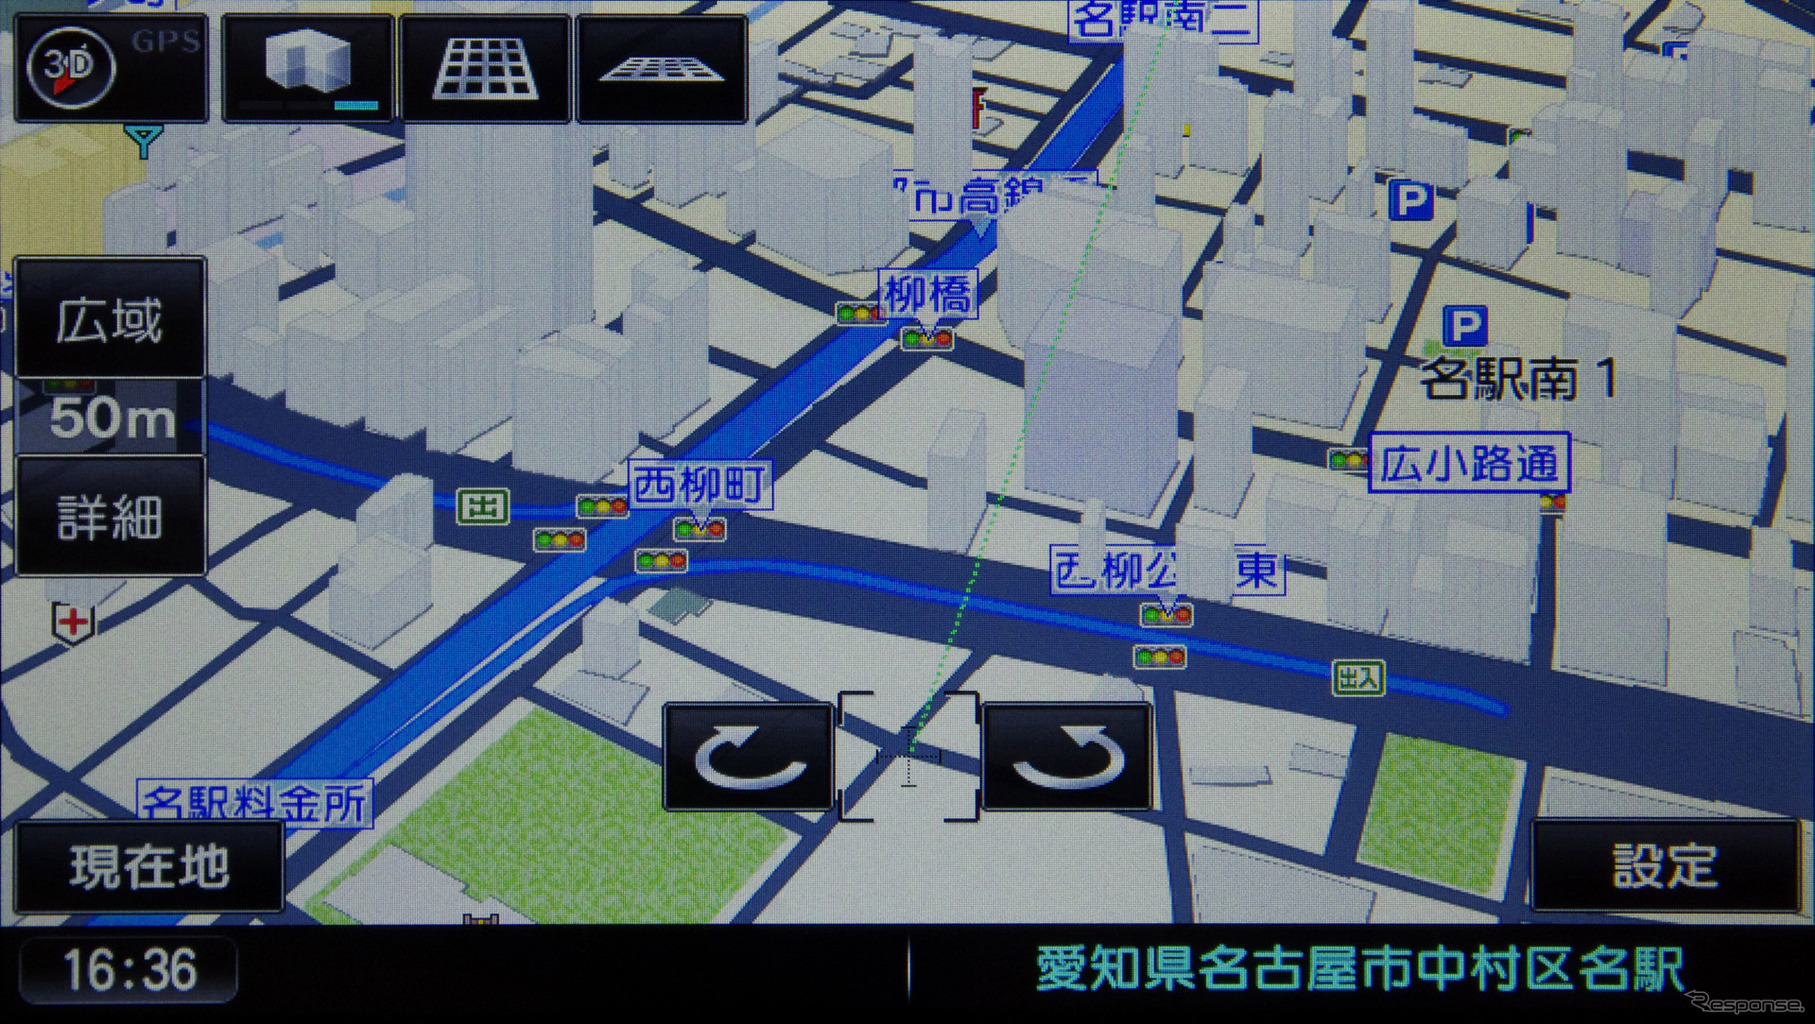 3D地図では建物を立体的に表示する。都市部に限られるものの、それなりに見応えのあるものだ。